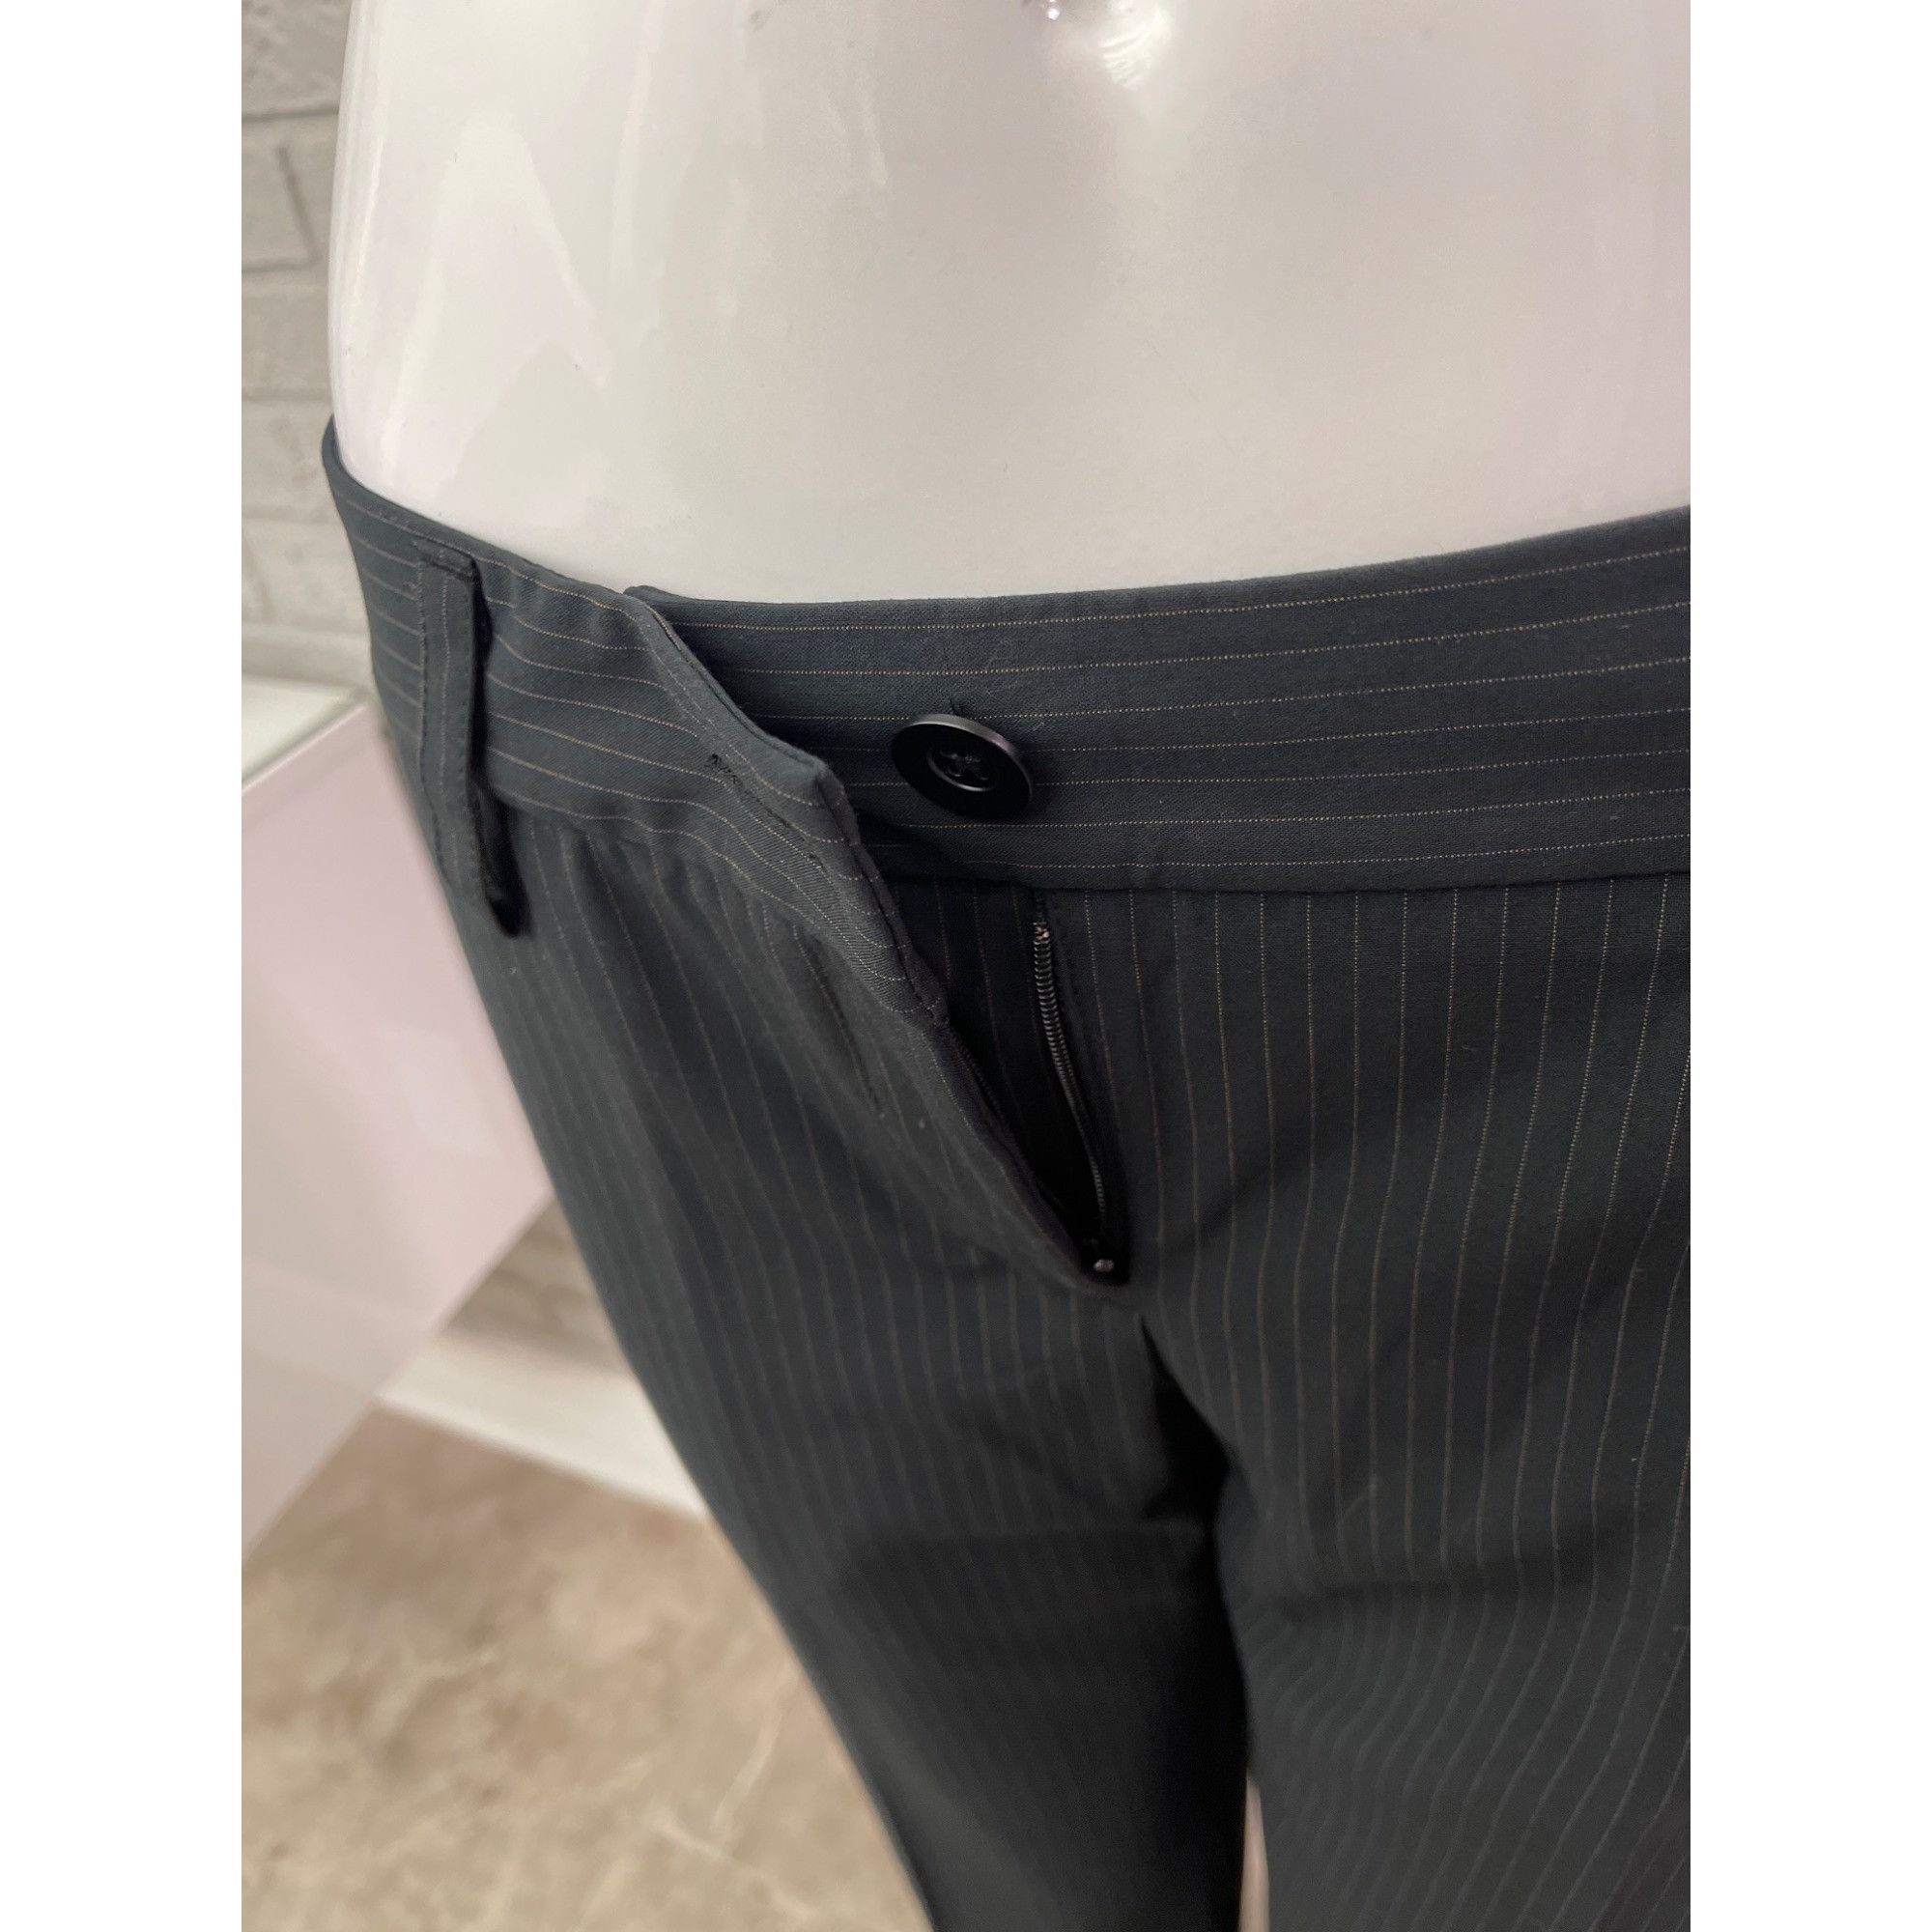 Other Cabi Black Pin Striped Pant 2 Pcs Suit Set Jacket 4 Pant 6 Size S / US 4 / IT 40 - 11 Thumbnail